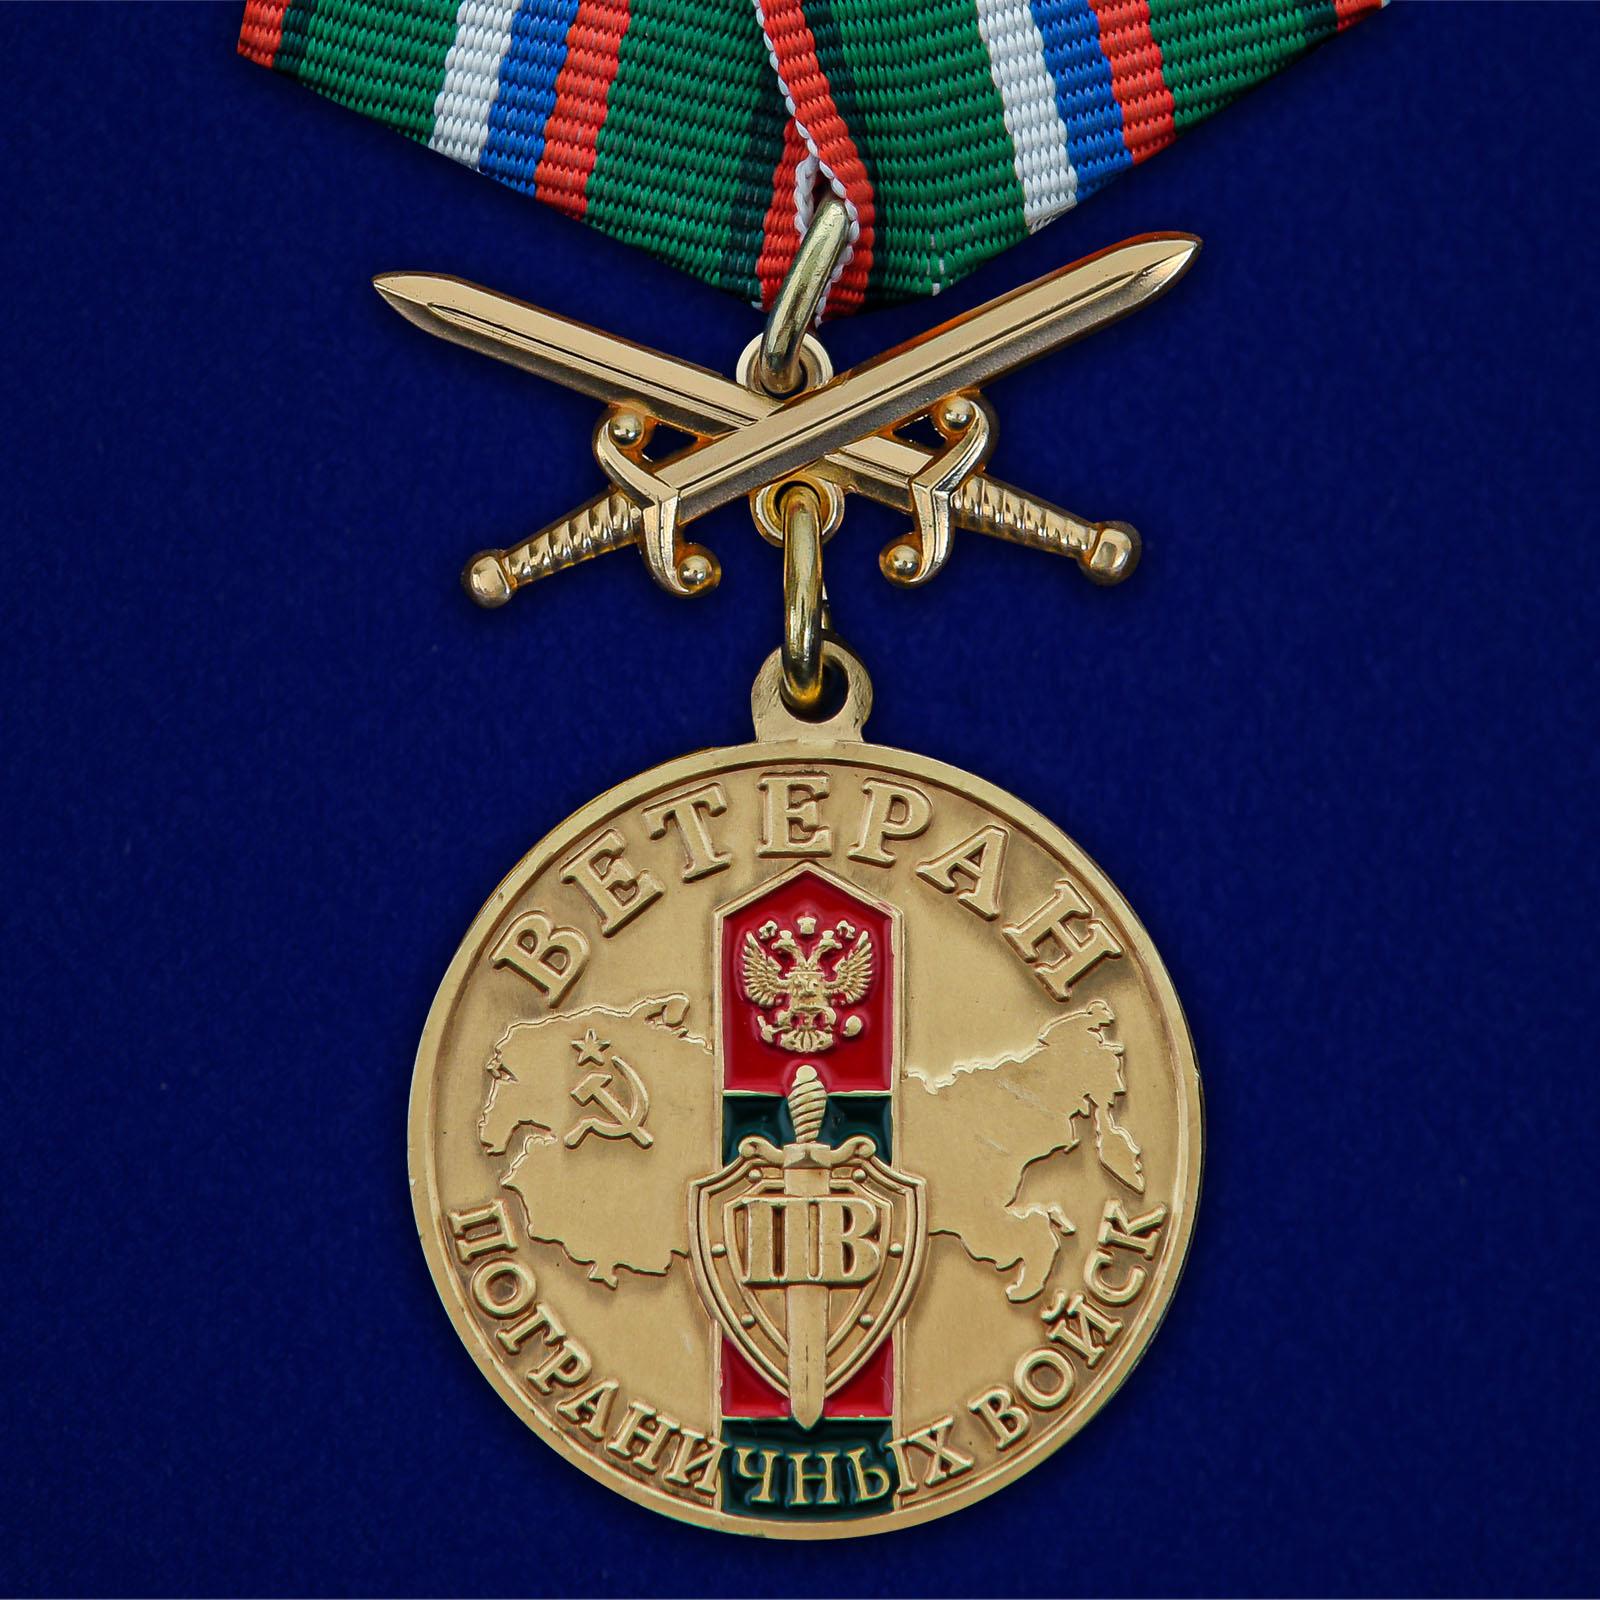 Купить медаль Ветерану Пограничных войск онлайн выгодно